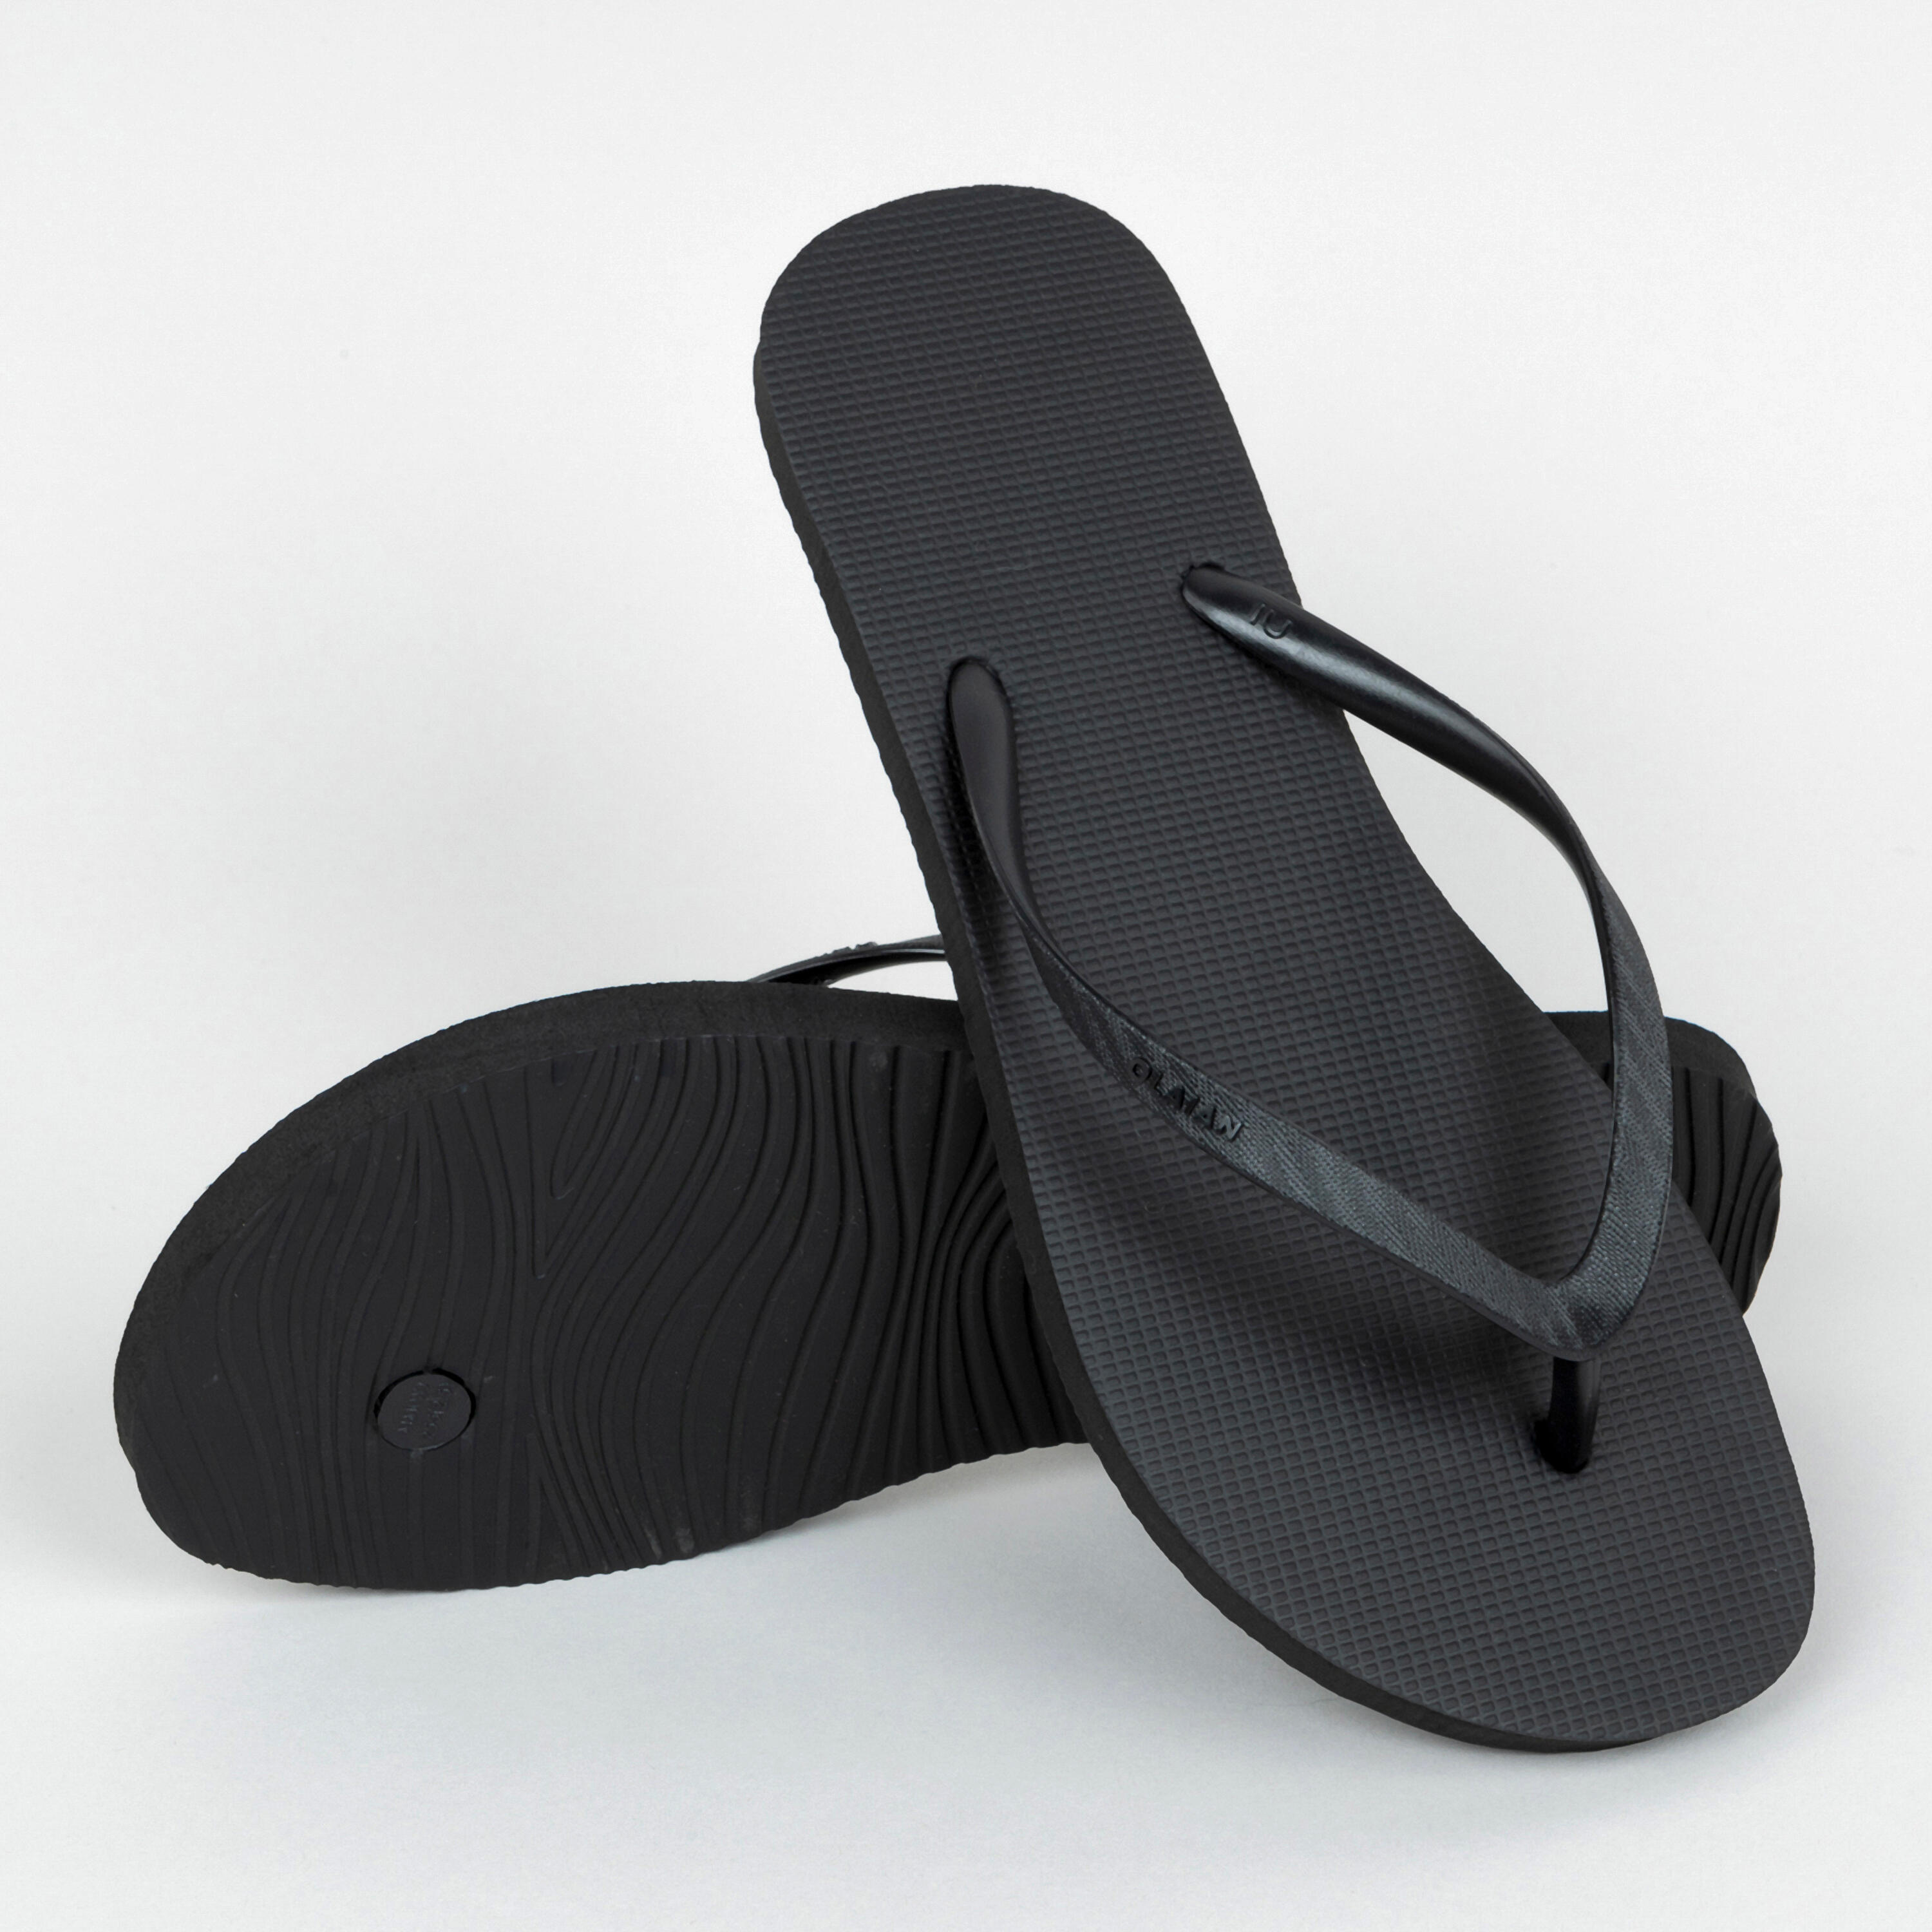 Original high quality SFN black rubber flip flops. (UK size: 3 / 3.5 / 4)